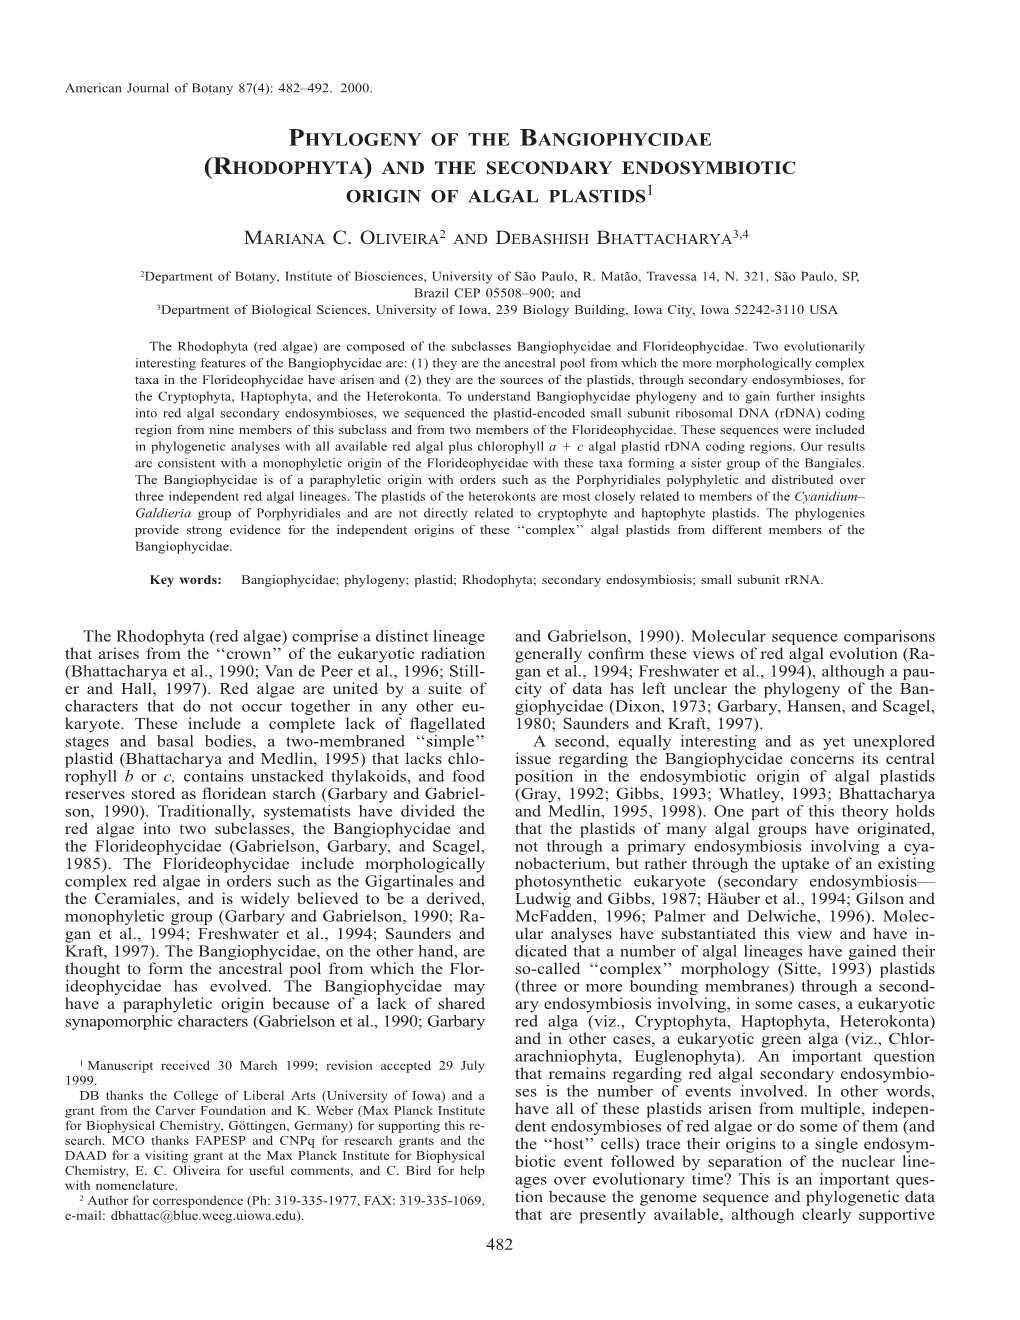 Phylogeny of the Bangiophycidae (Rhodophyta) and the Secondary Endosymbiotic Origin of Algal Plastids1